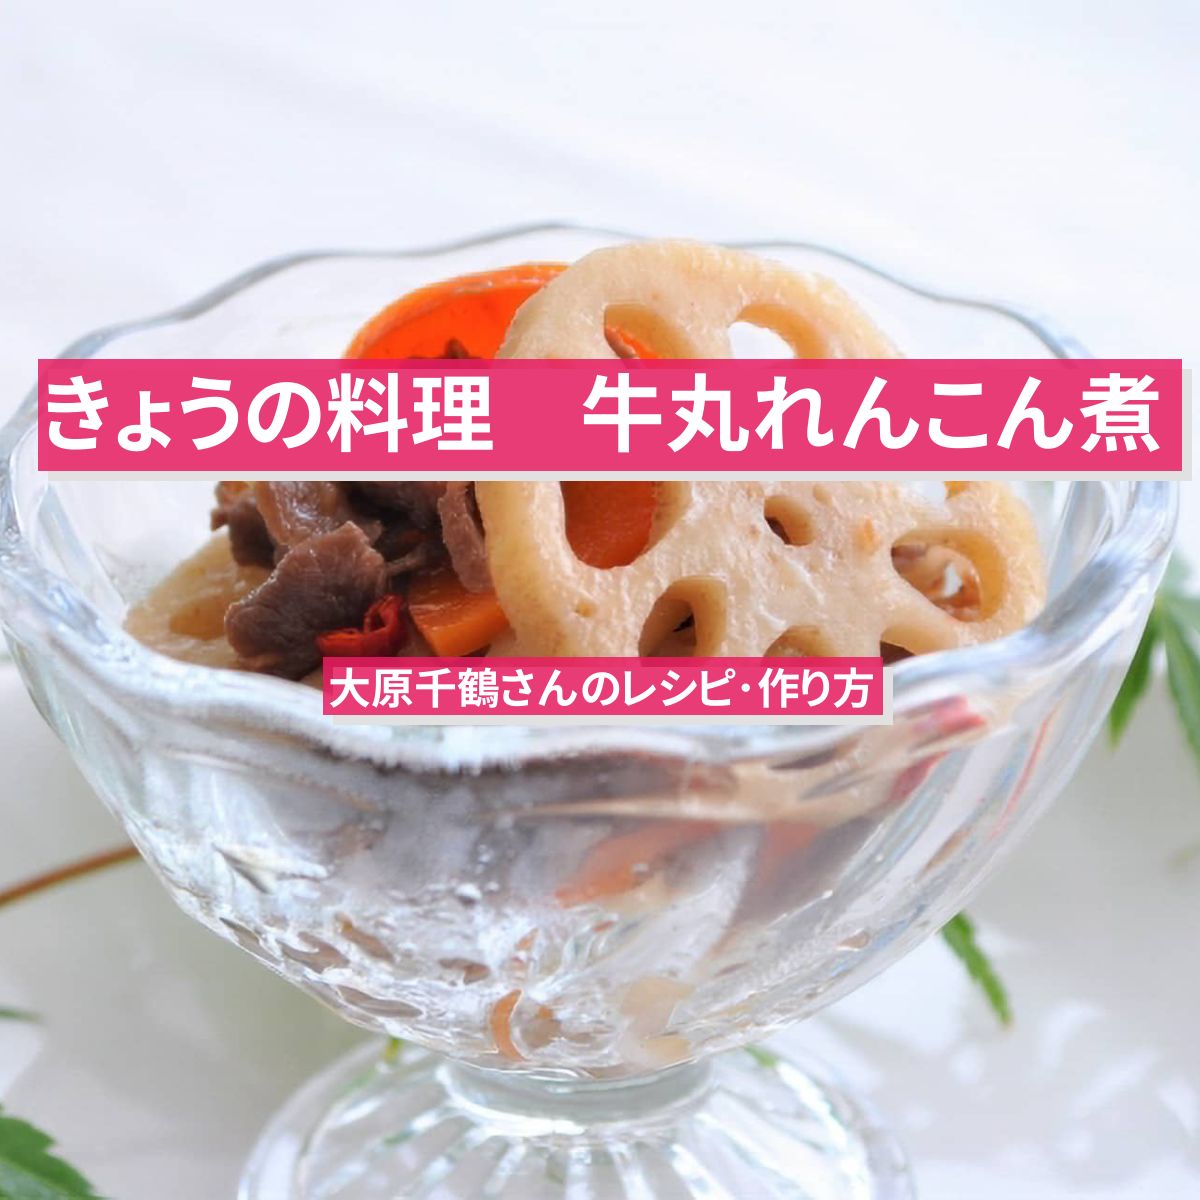 【きょうの料理】『牛丸れんこん煮』大原千鶴さんのレシピ･作り方